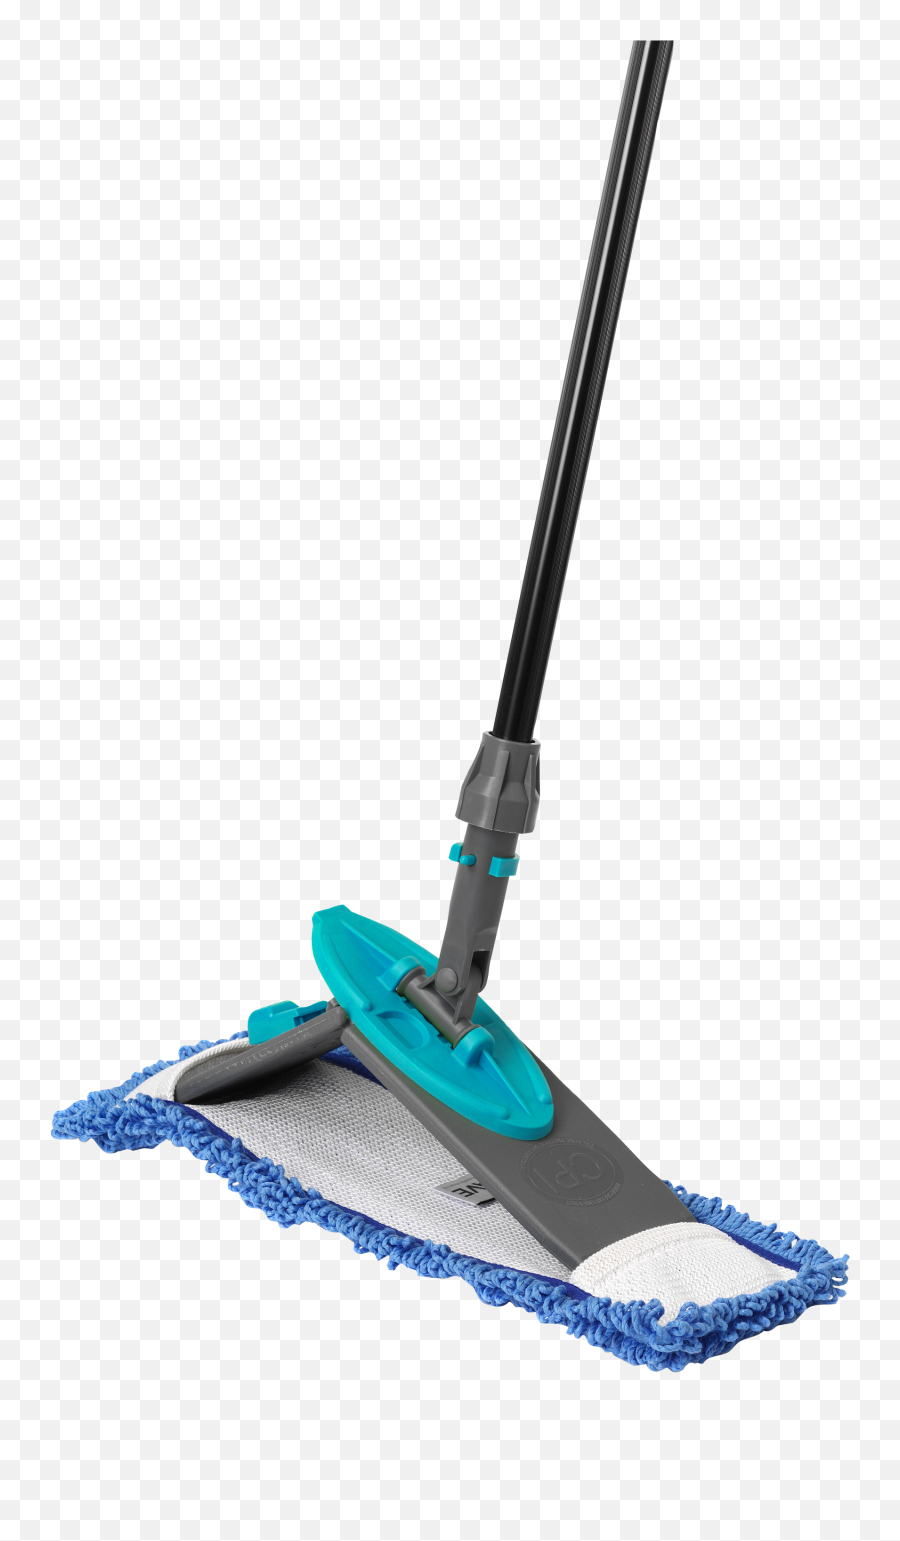 Dust Mop With Microfiber Pad I - Team Ifibre Fibre Mop Png,Mop Png